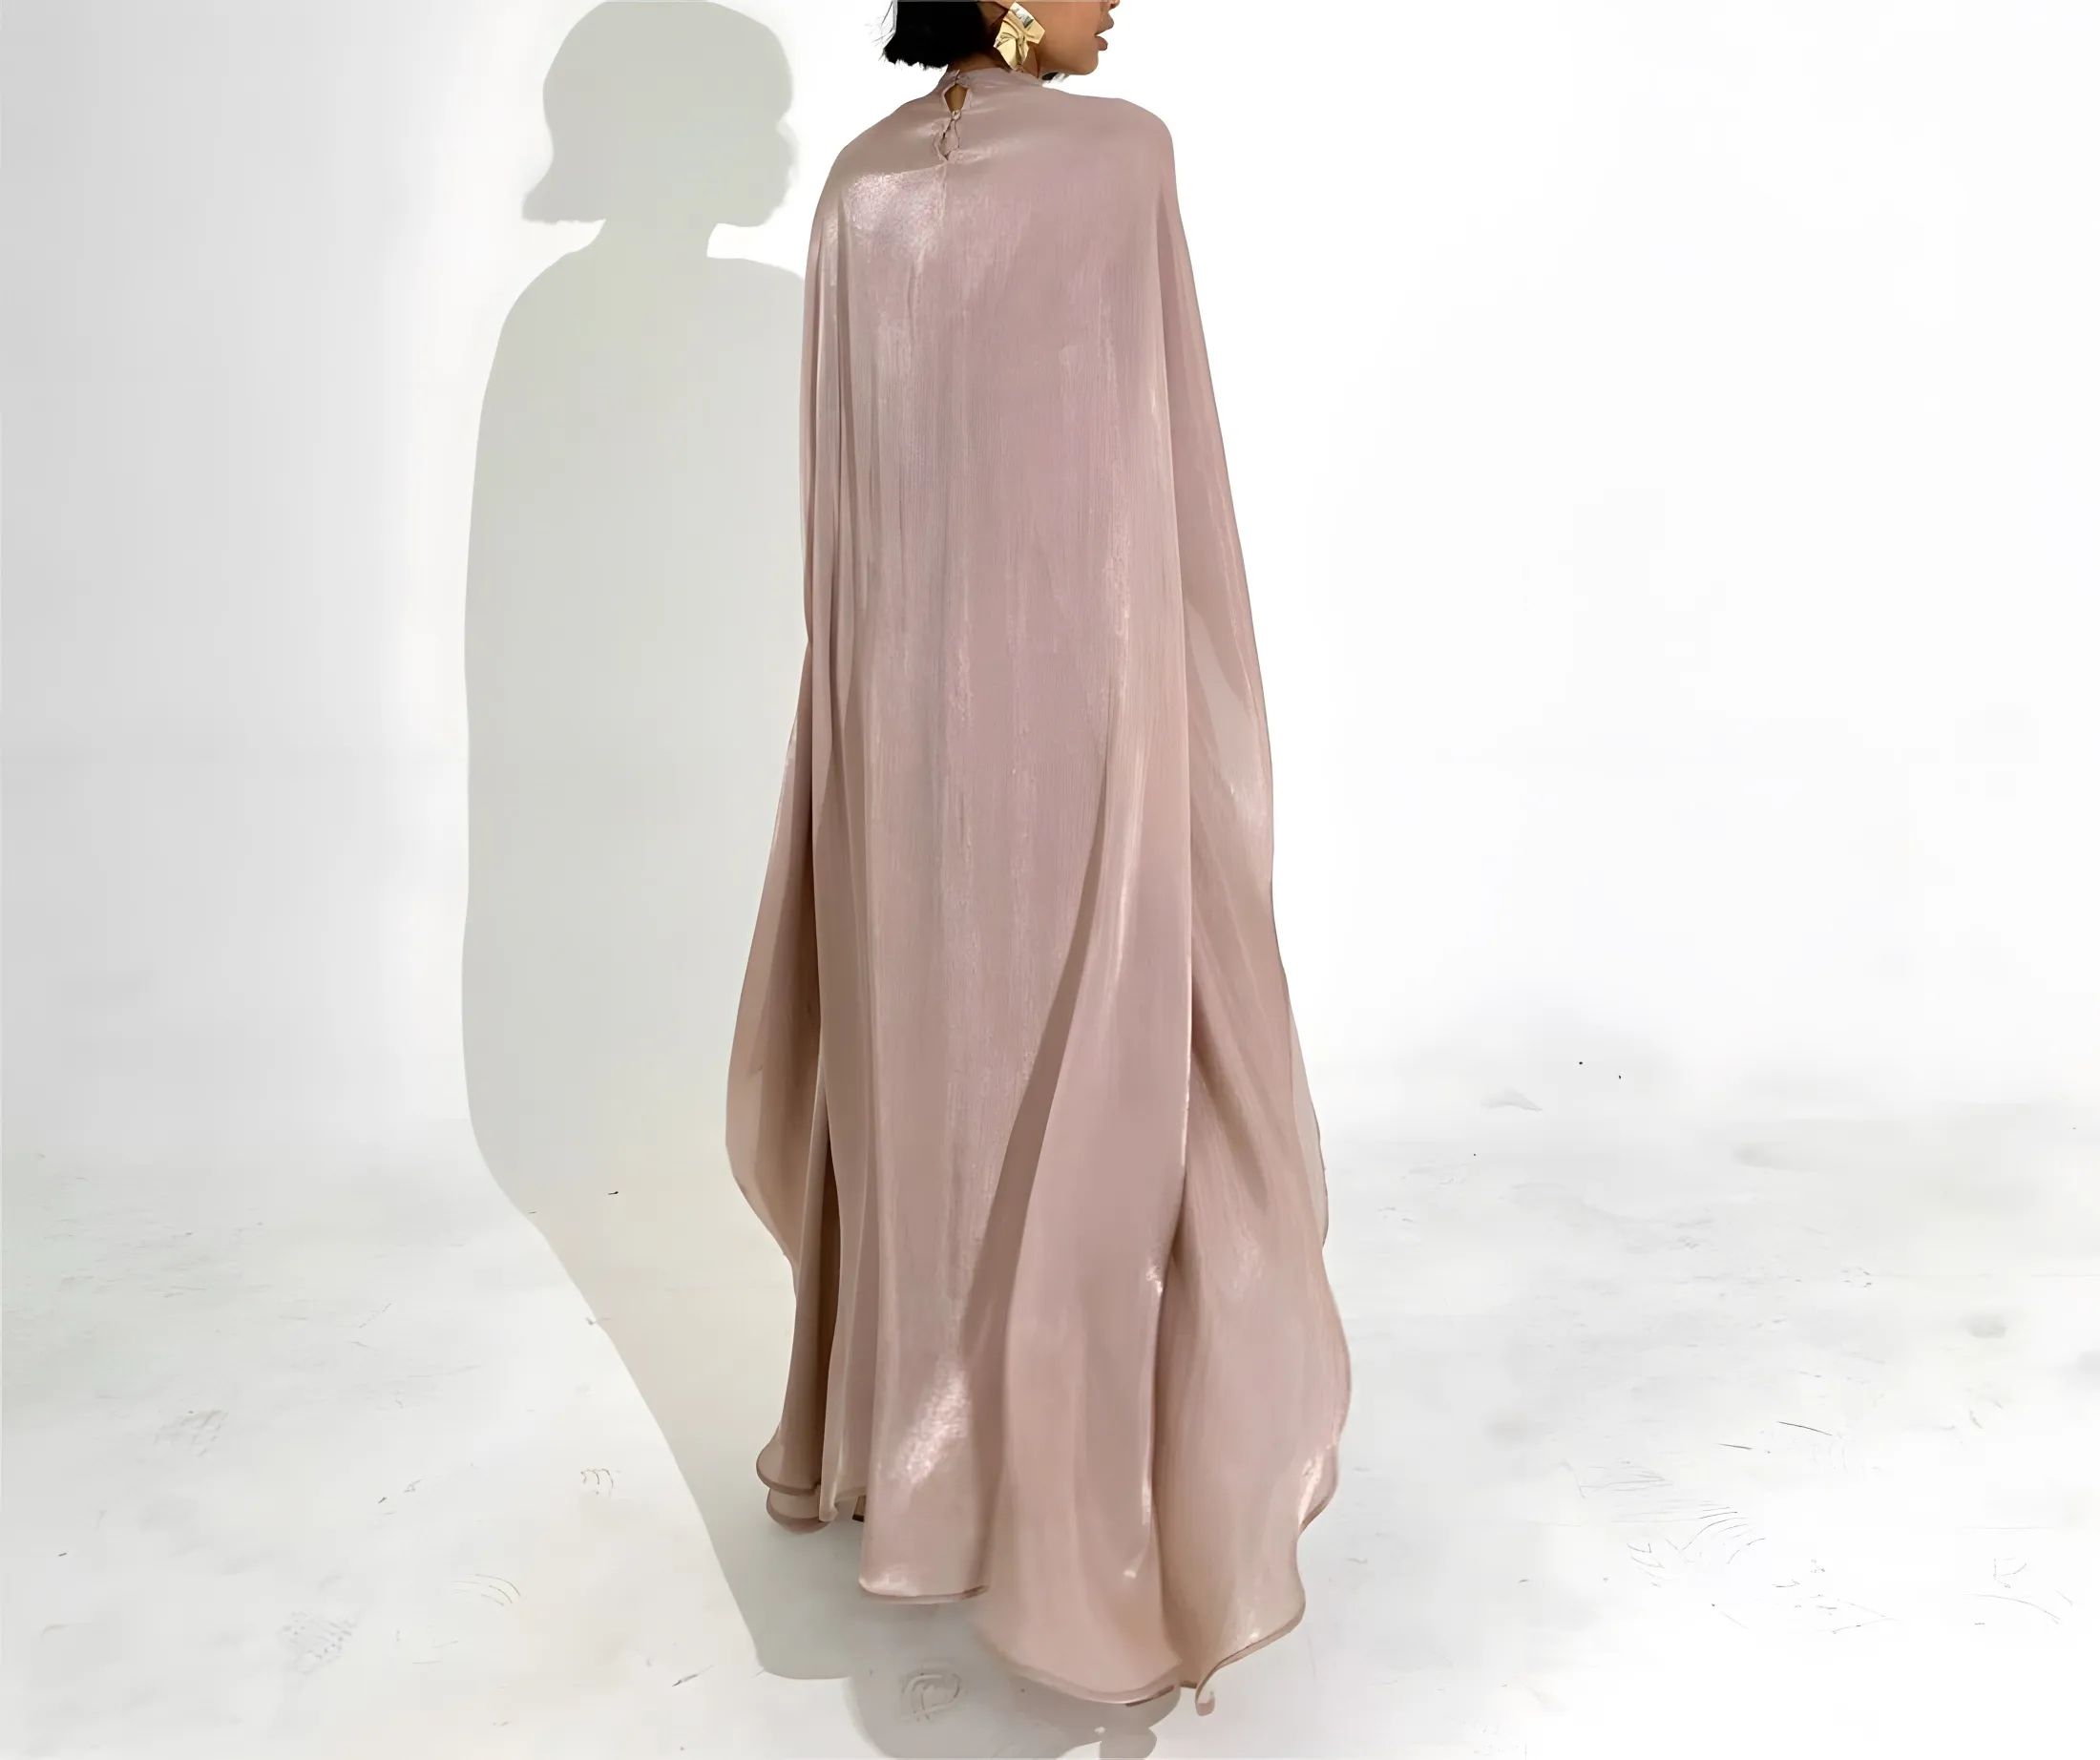 마크 다운 세일 심플한 새로운 디자인 드레스 플리트 Abaya 온라인 저녁/정장 드레스 Kurta 디자인